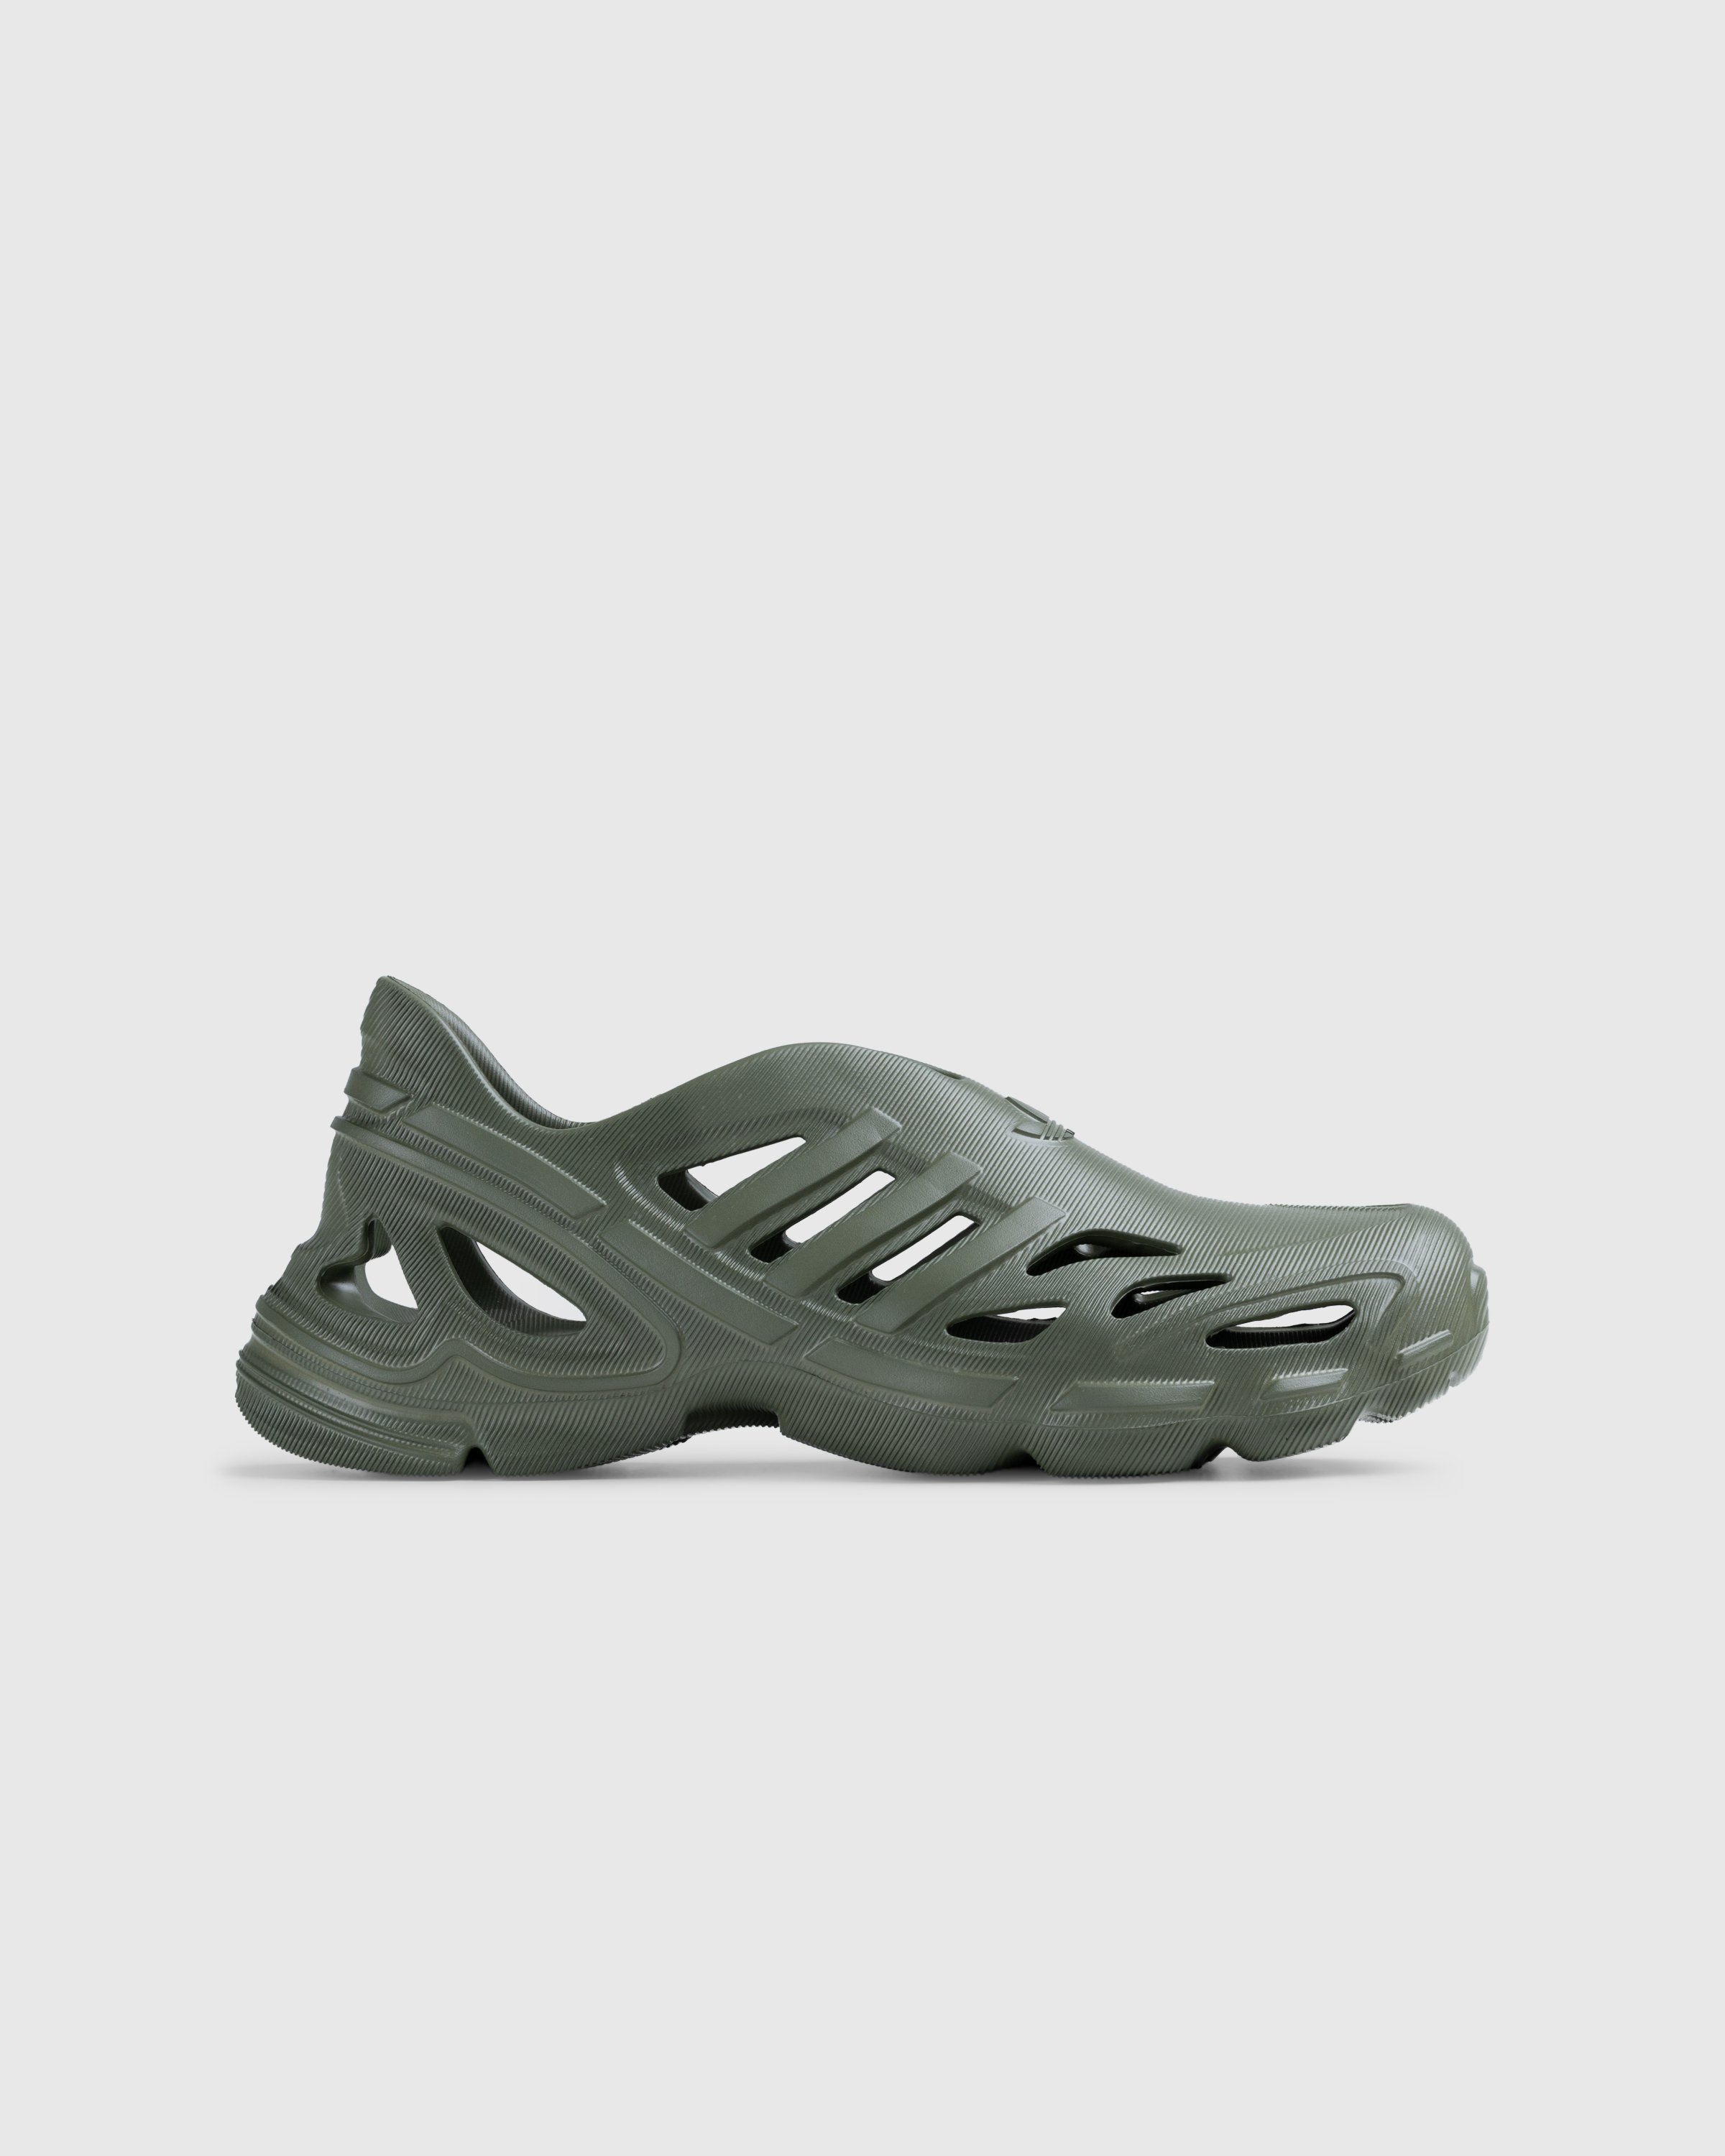 Adidas - Adifom Supernova Focus Olive - Footwear - Green - Image 1